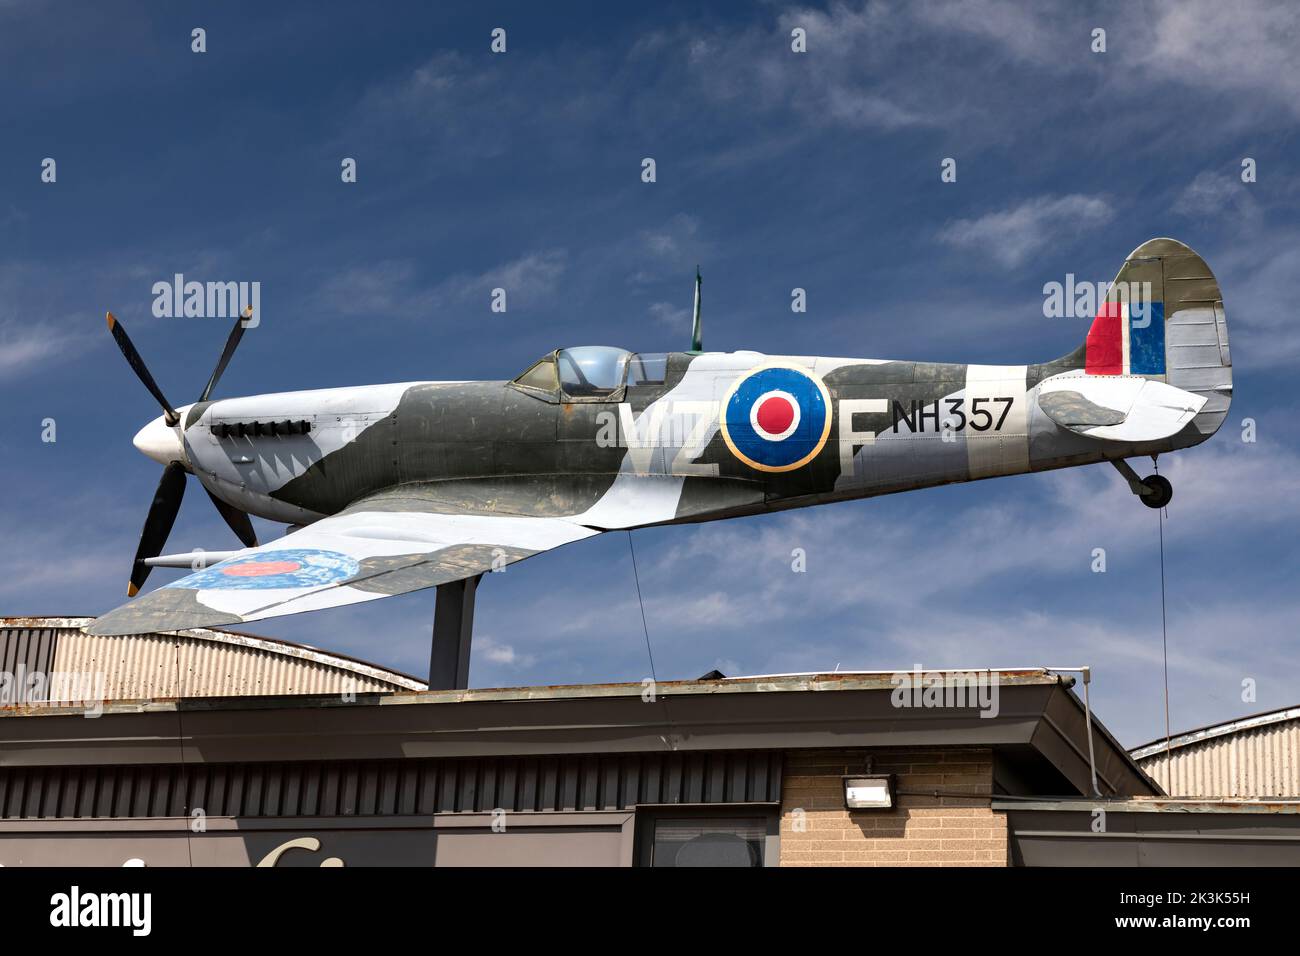 L'avion Spitfire est affiché sur le toit du magasin en surplus. Kitchener Ontario Canada Banque D'Images